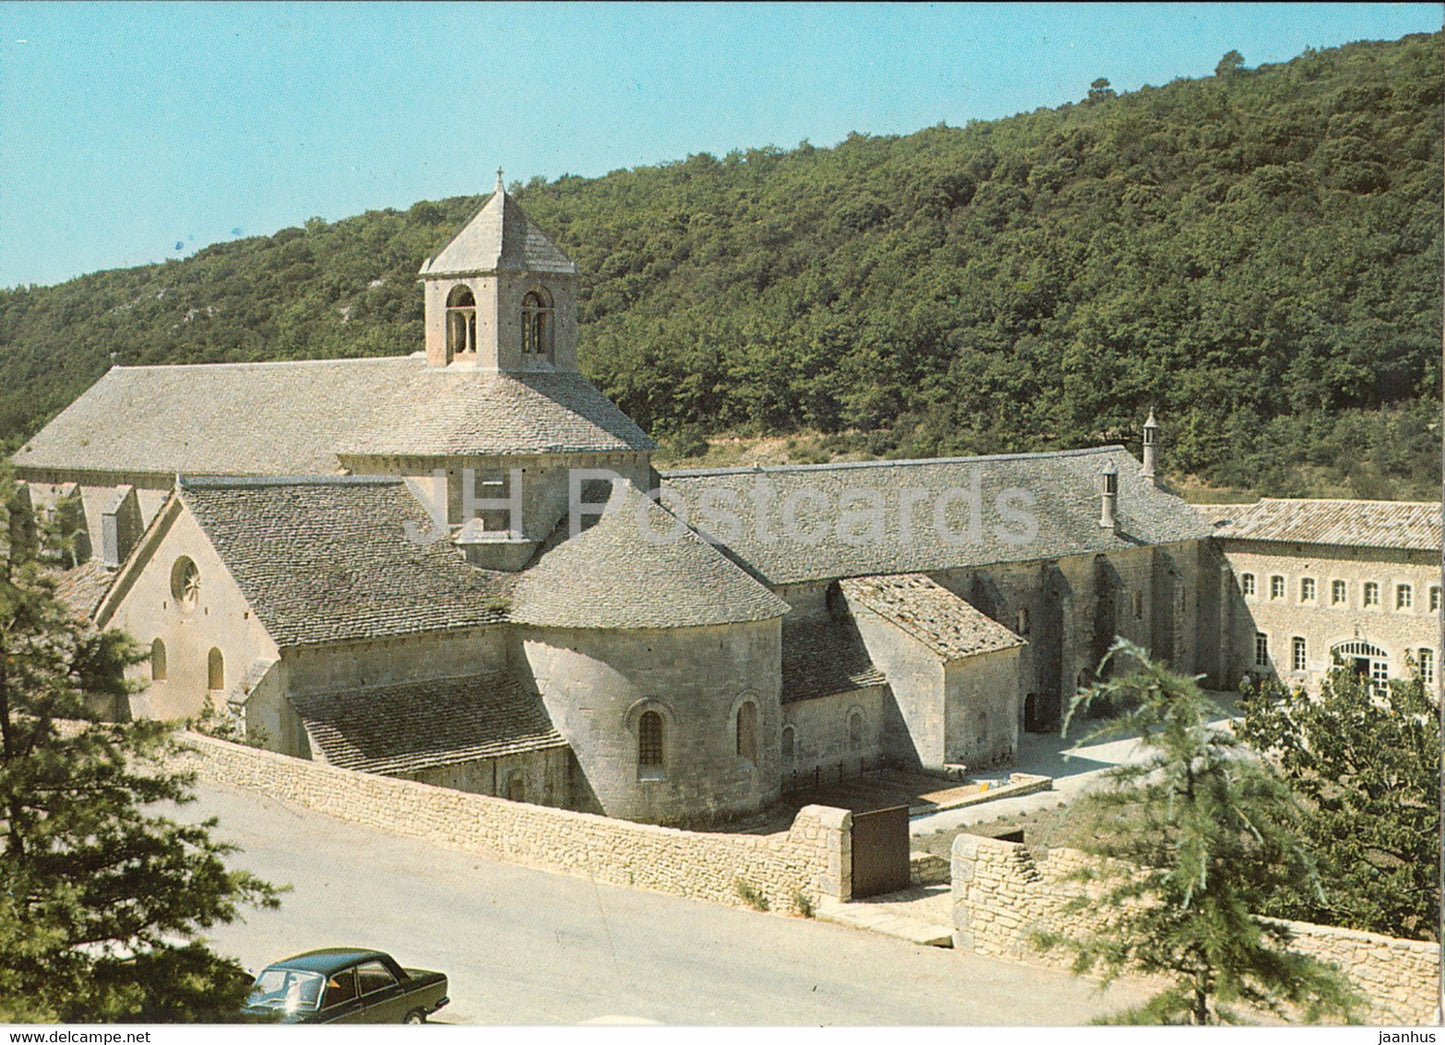 L'Abbaye de Senanque - Les Belles Images de Provence - 4180 - France - unused - JH Postcards